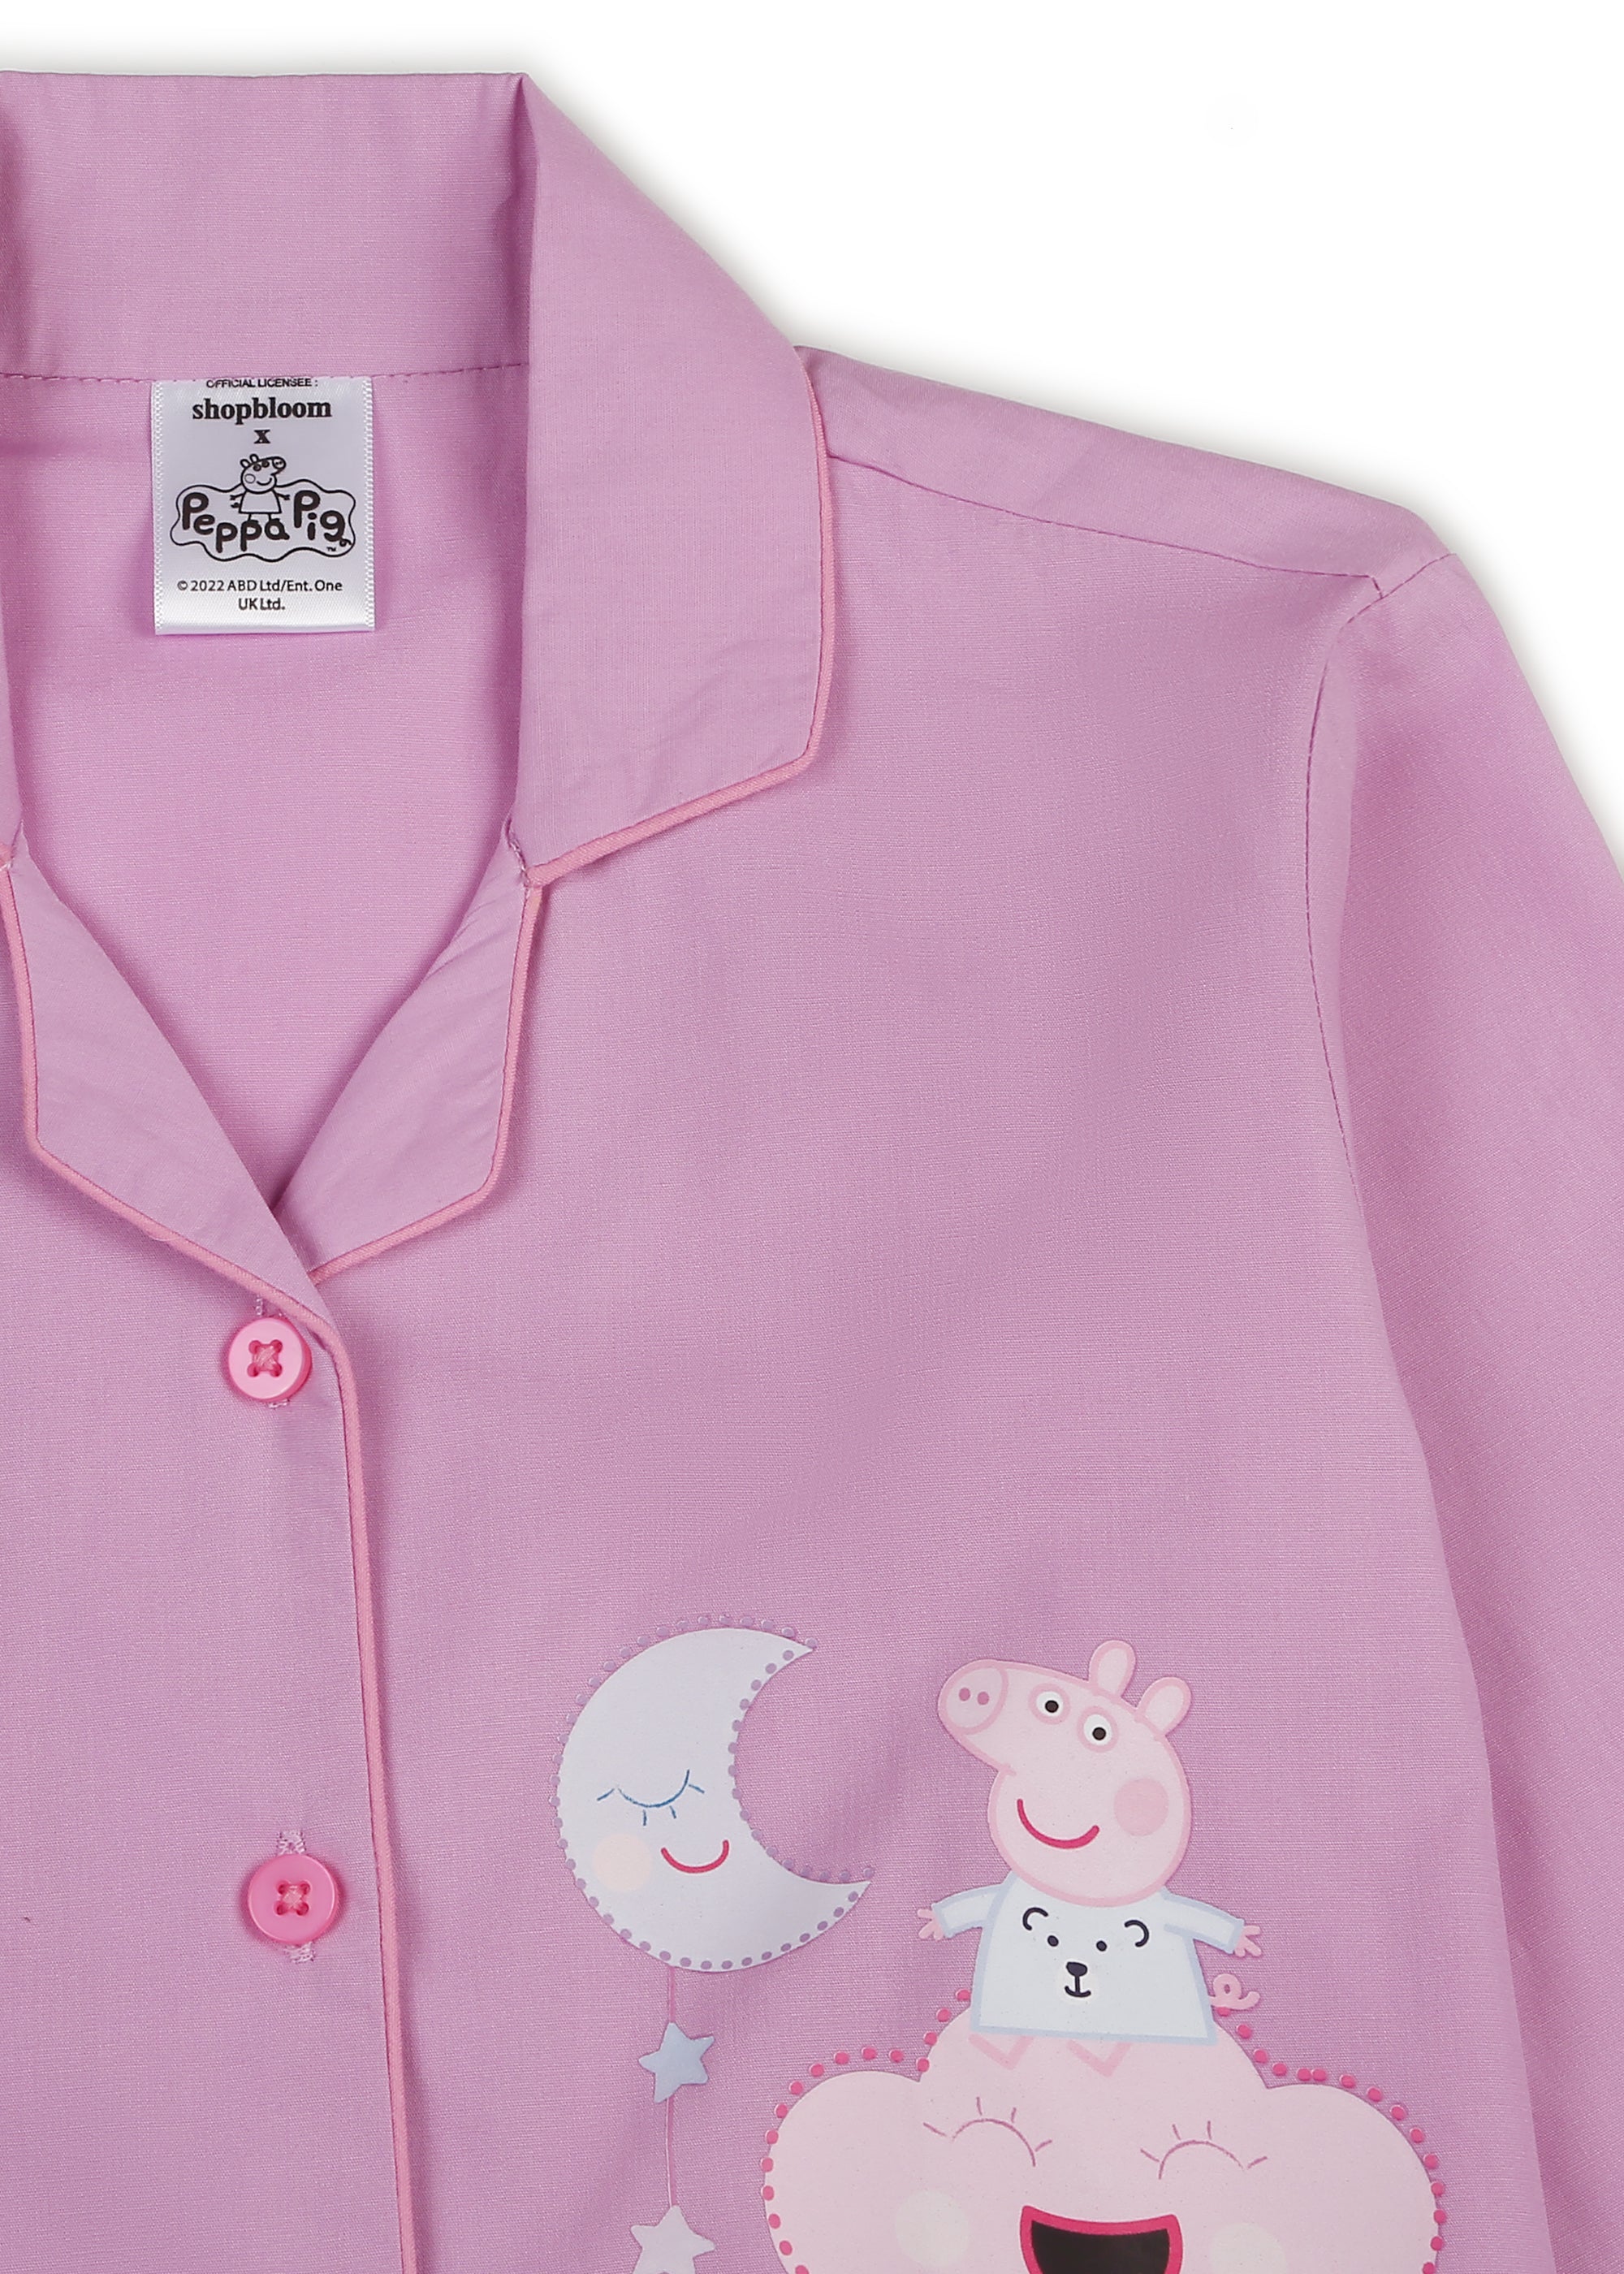 Peppa Pig Lavender Dream Print Long Sleeve Kids Night Suit